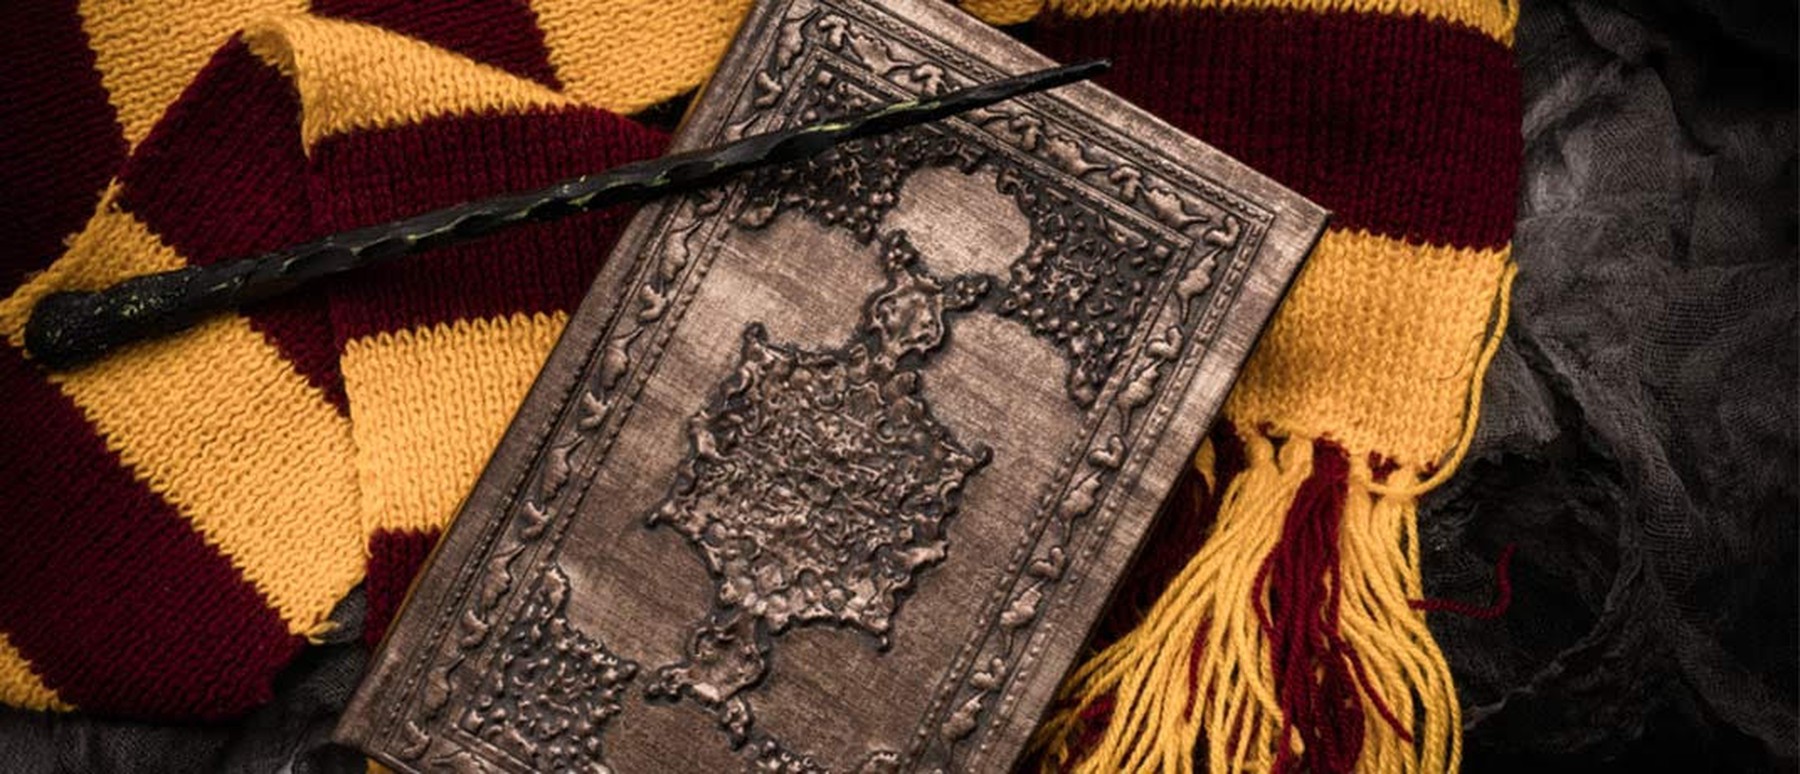 Zauberstab und Buch auf Gryffindor-Schal